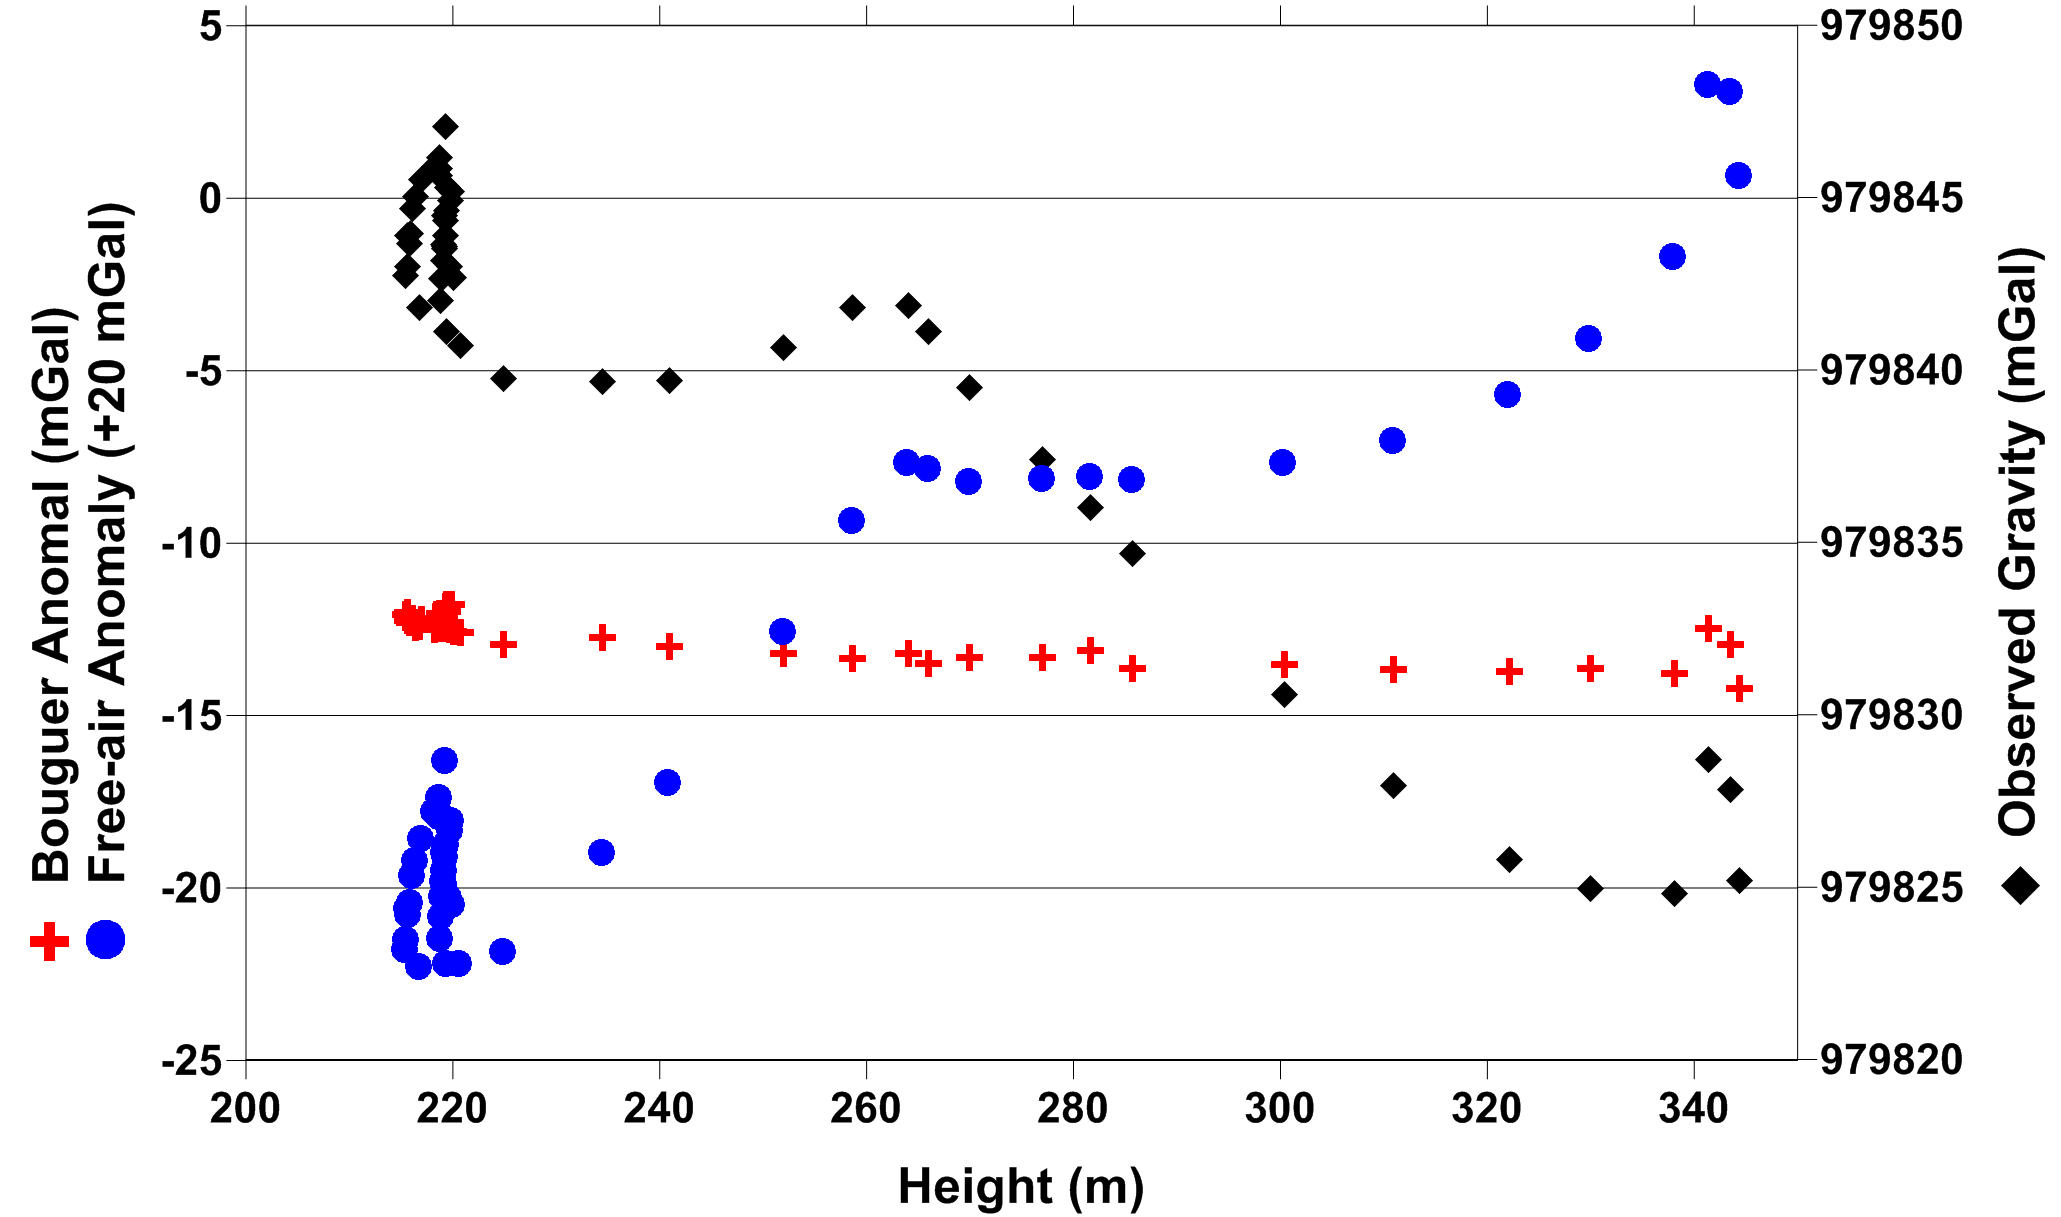 그림 3.1.22. NMC 몰랜드 광산 갱도 내 중력 측점점의 깊이별 관측 중력, 순높이 이상, 부게 이상